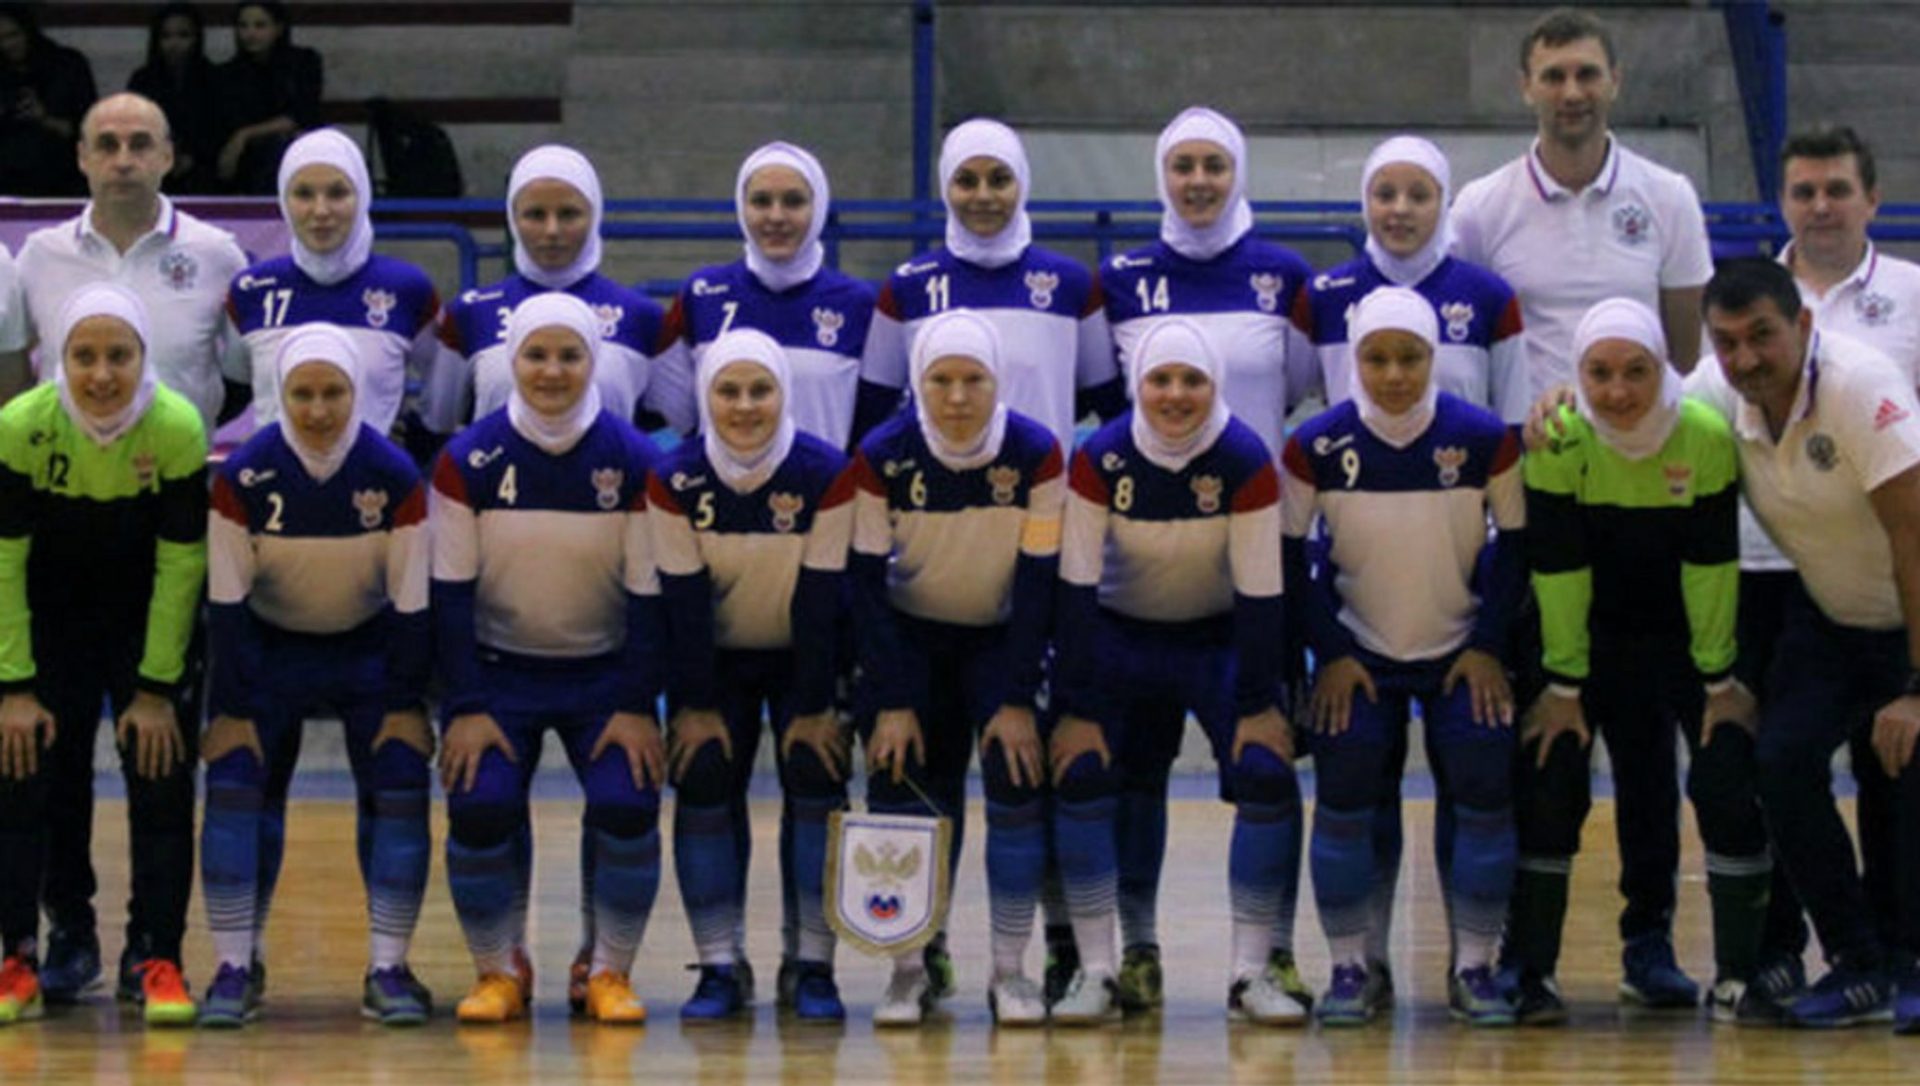 لاعبات المنتخب الروسي يرتدين الحجاب في إيران التزاماً بقواعد اللباس هناك